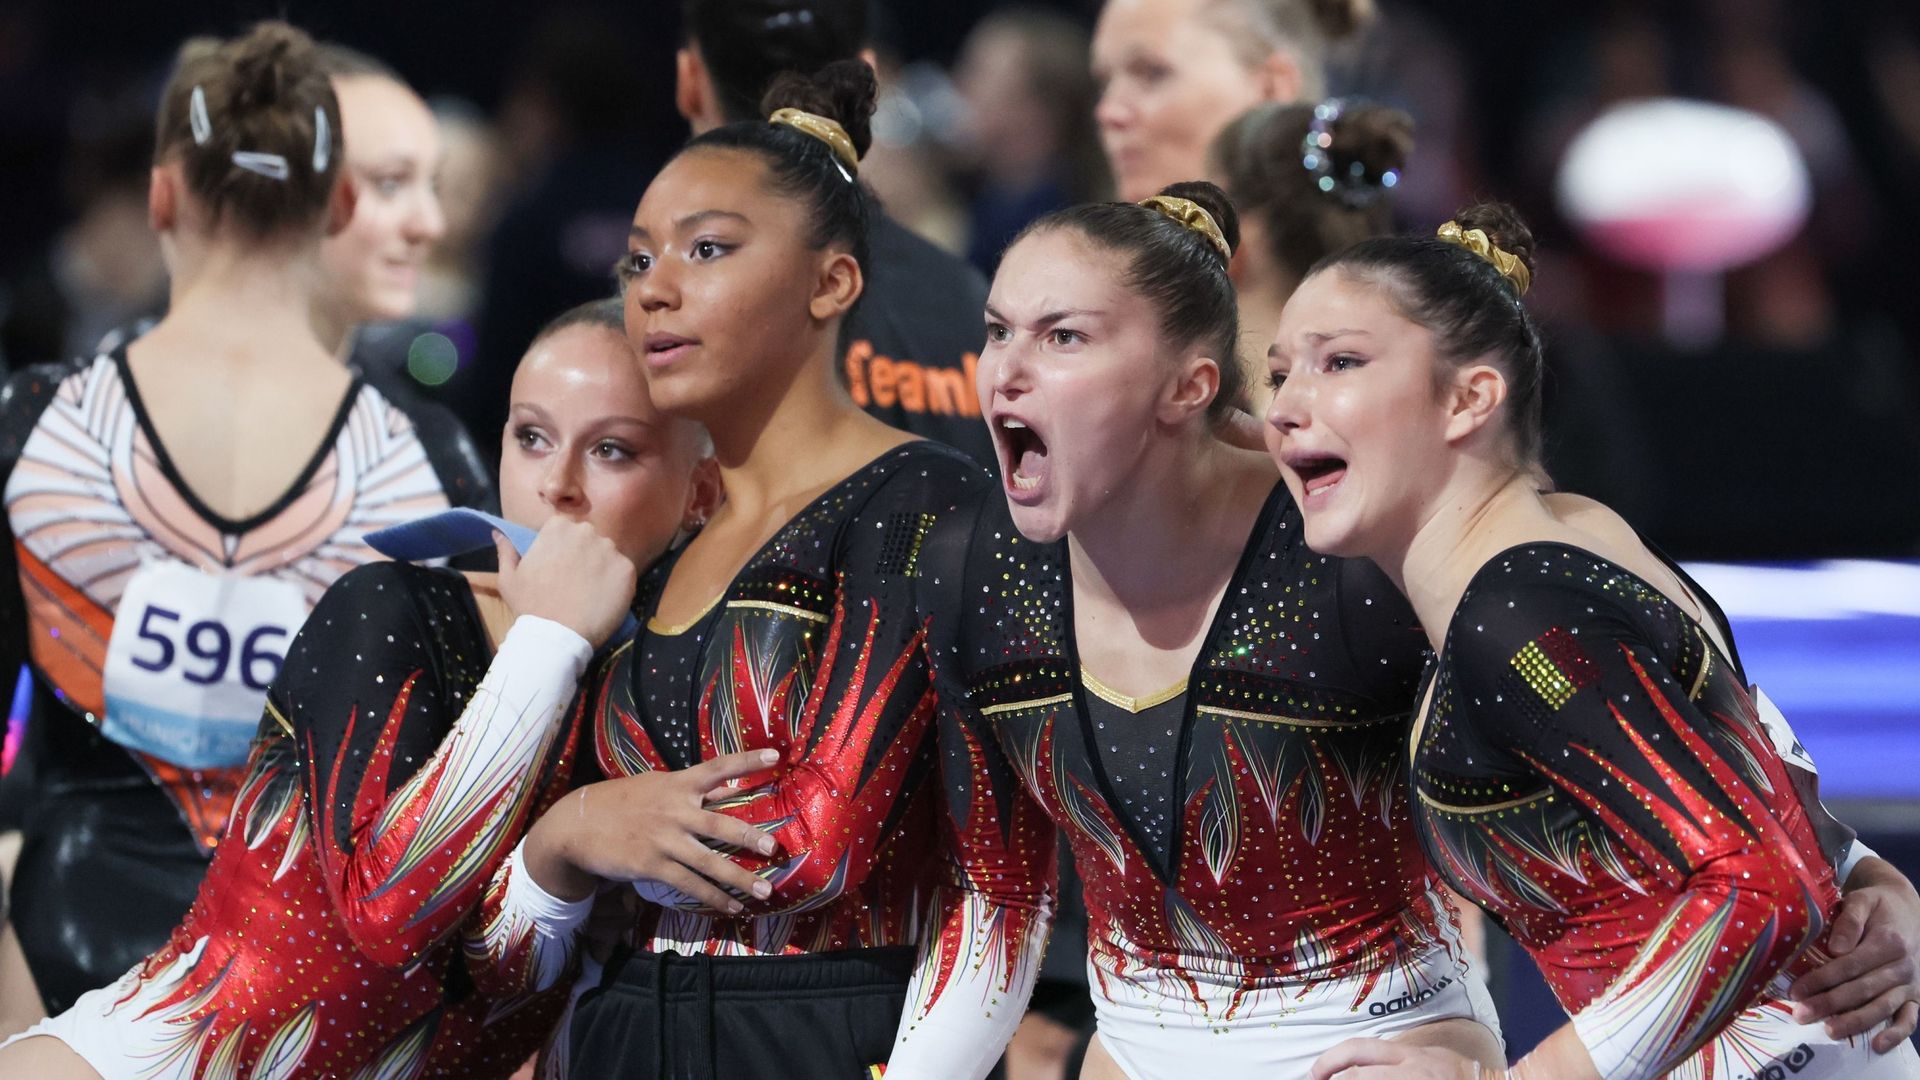 La Belgique s'est classée 5e de la finale de gymnastique par équipes. 